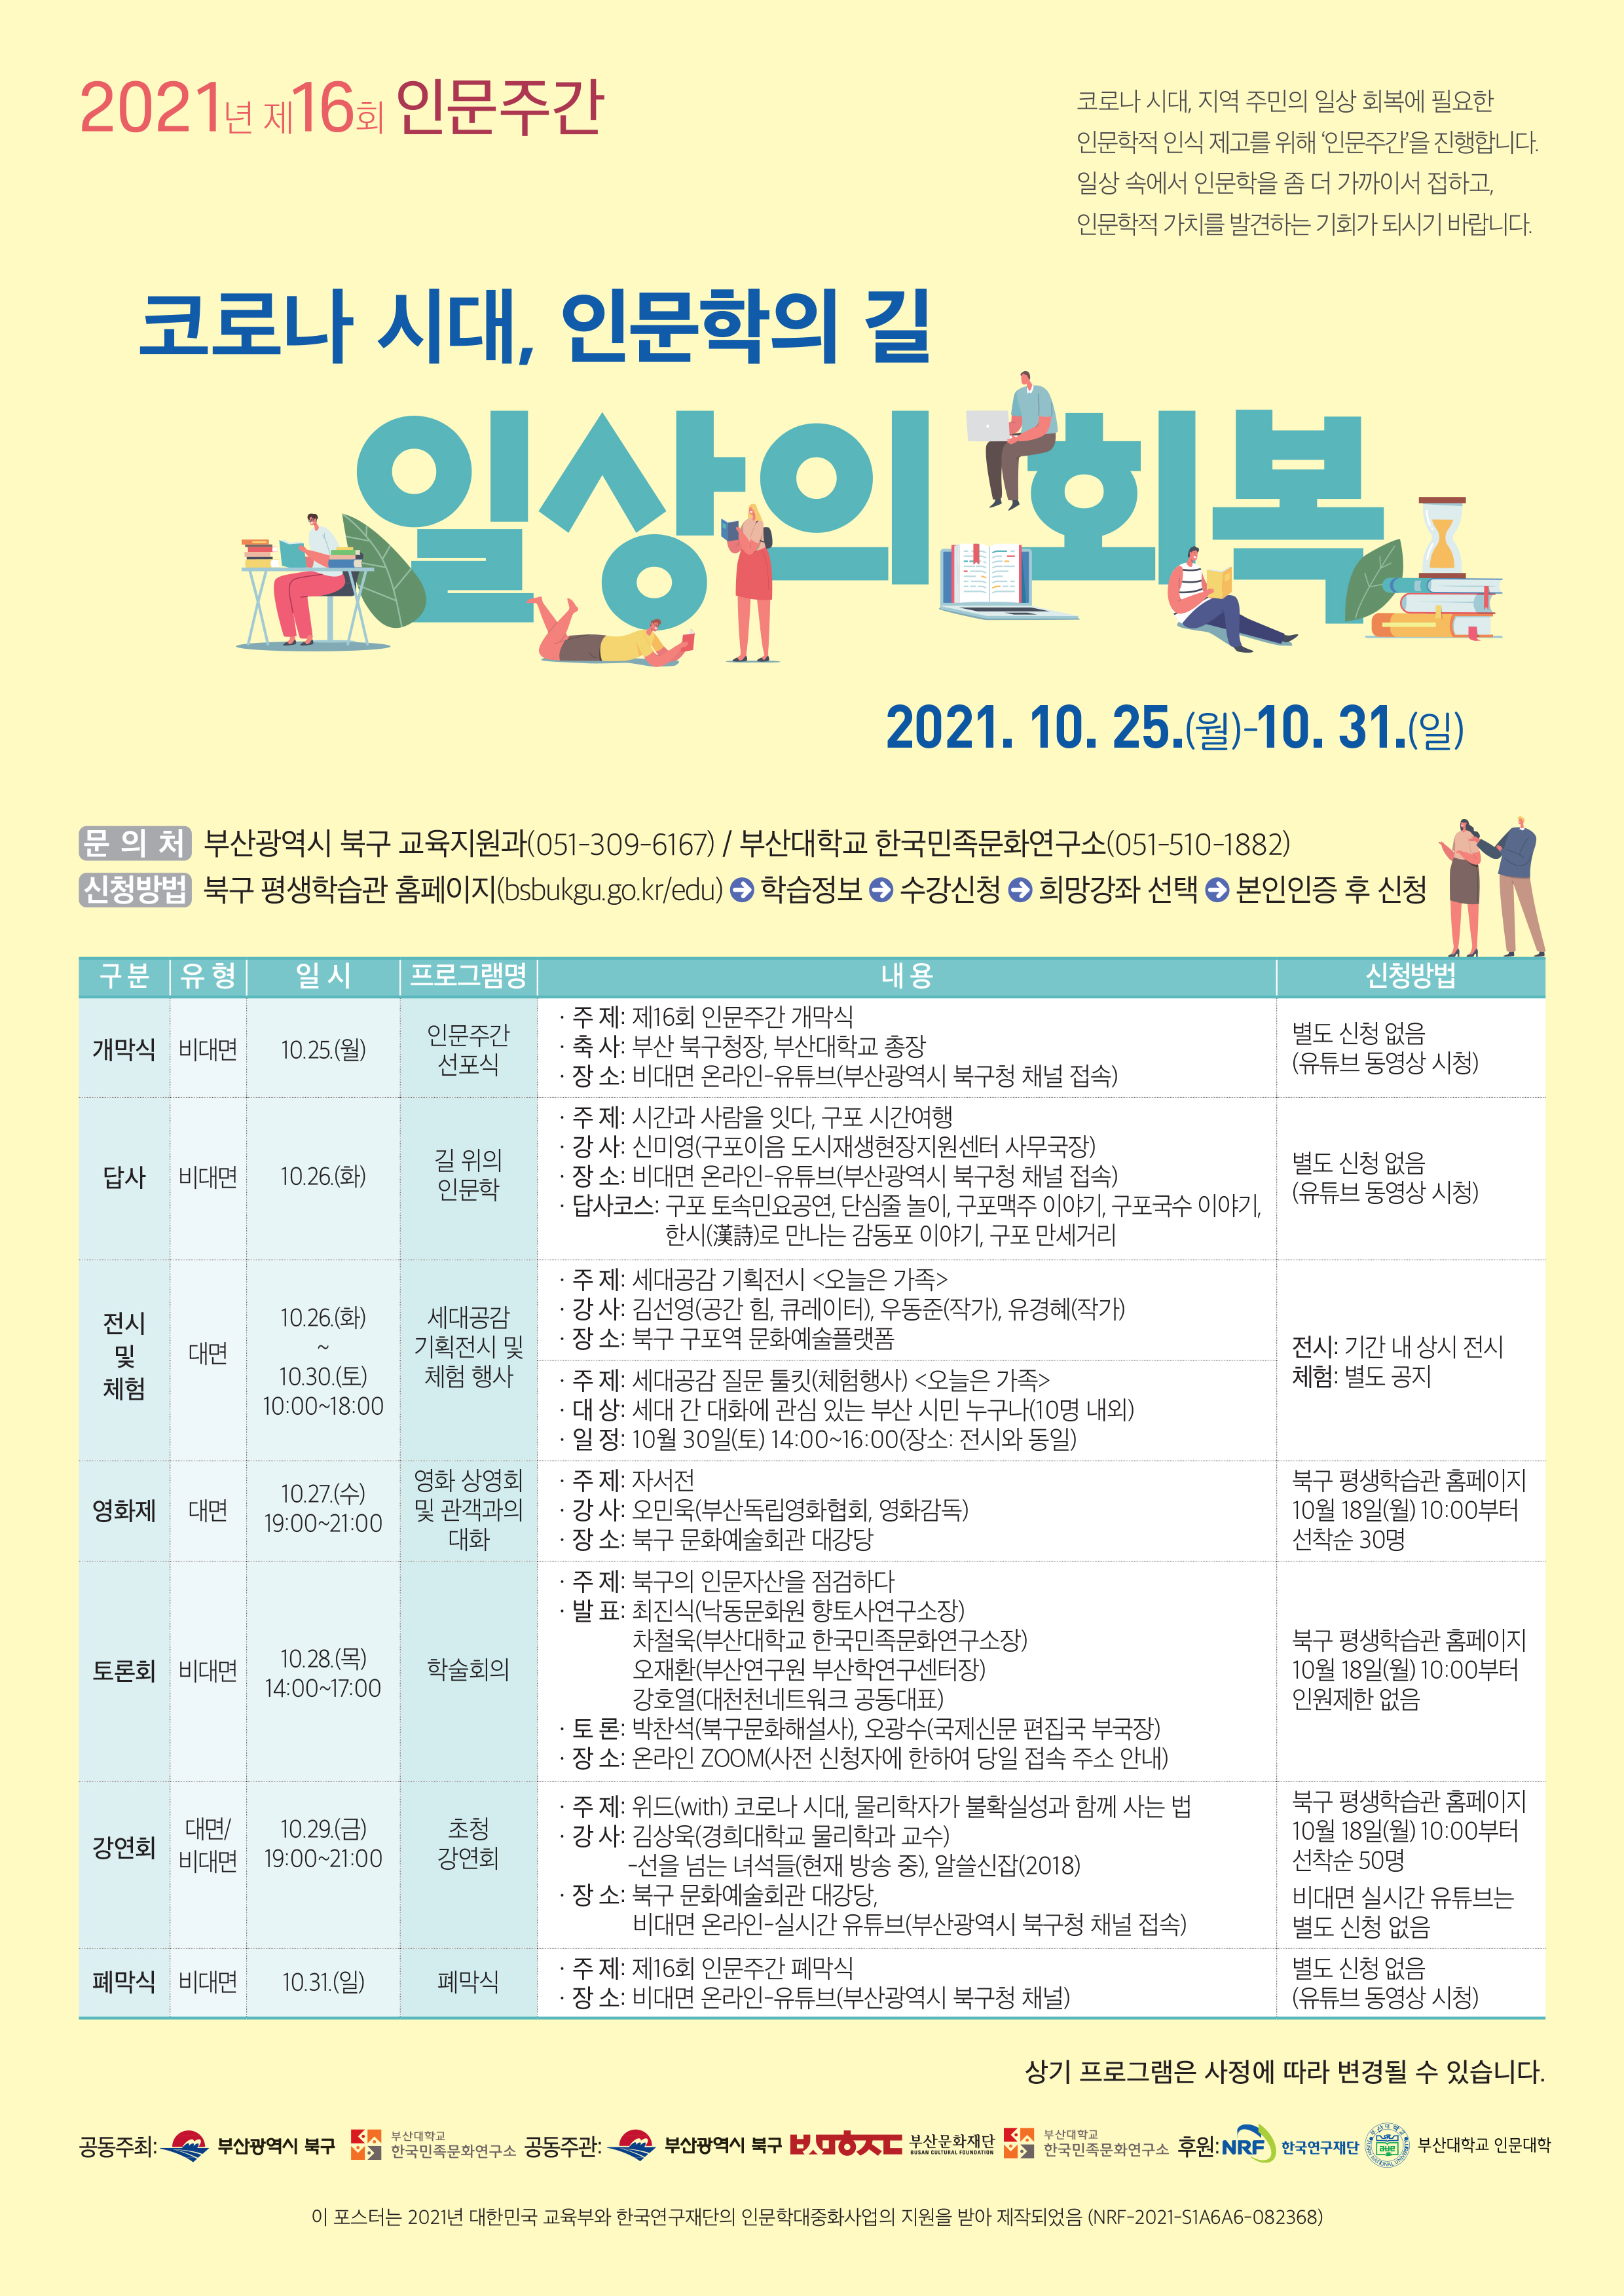 2021 부산대학교 인문도시지원사업 제16회 인문주간 행사 안내